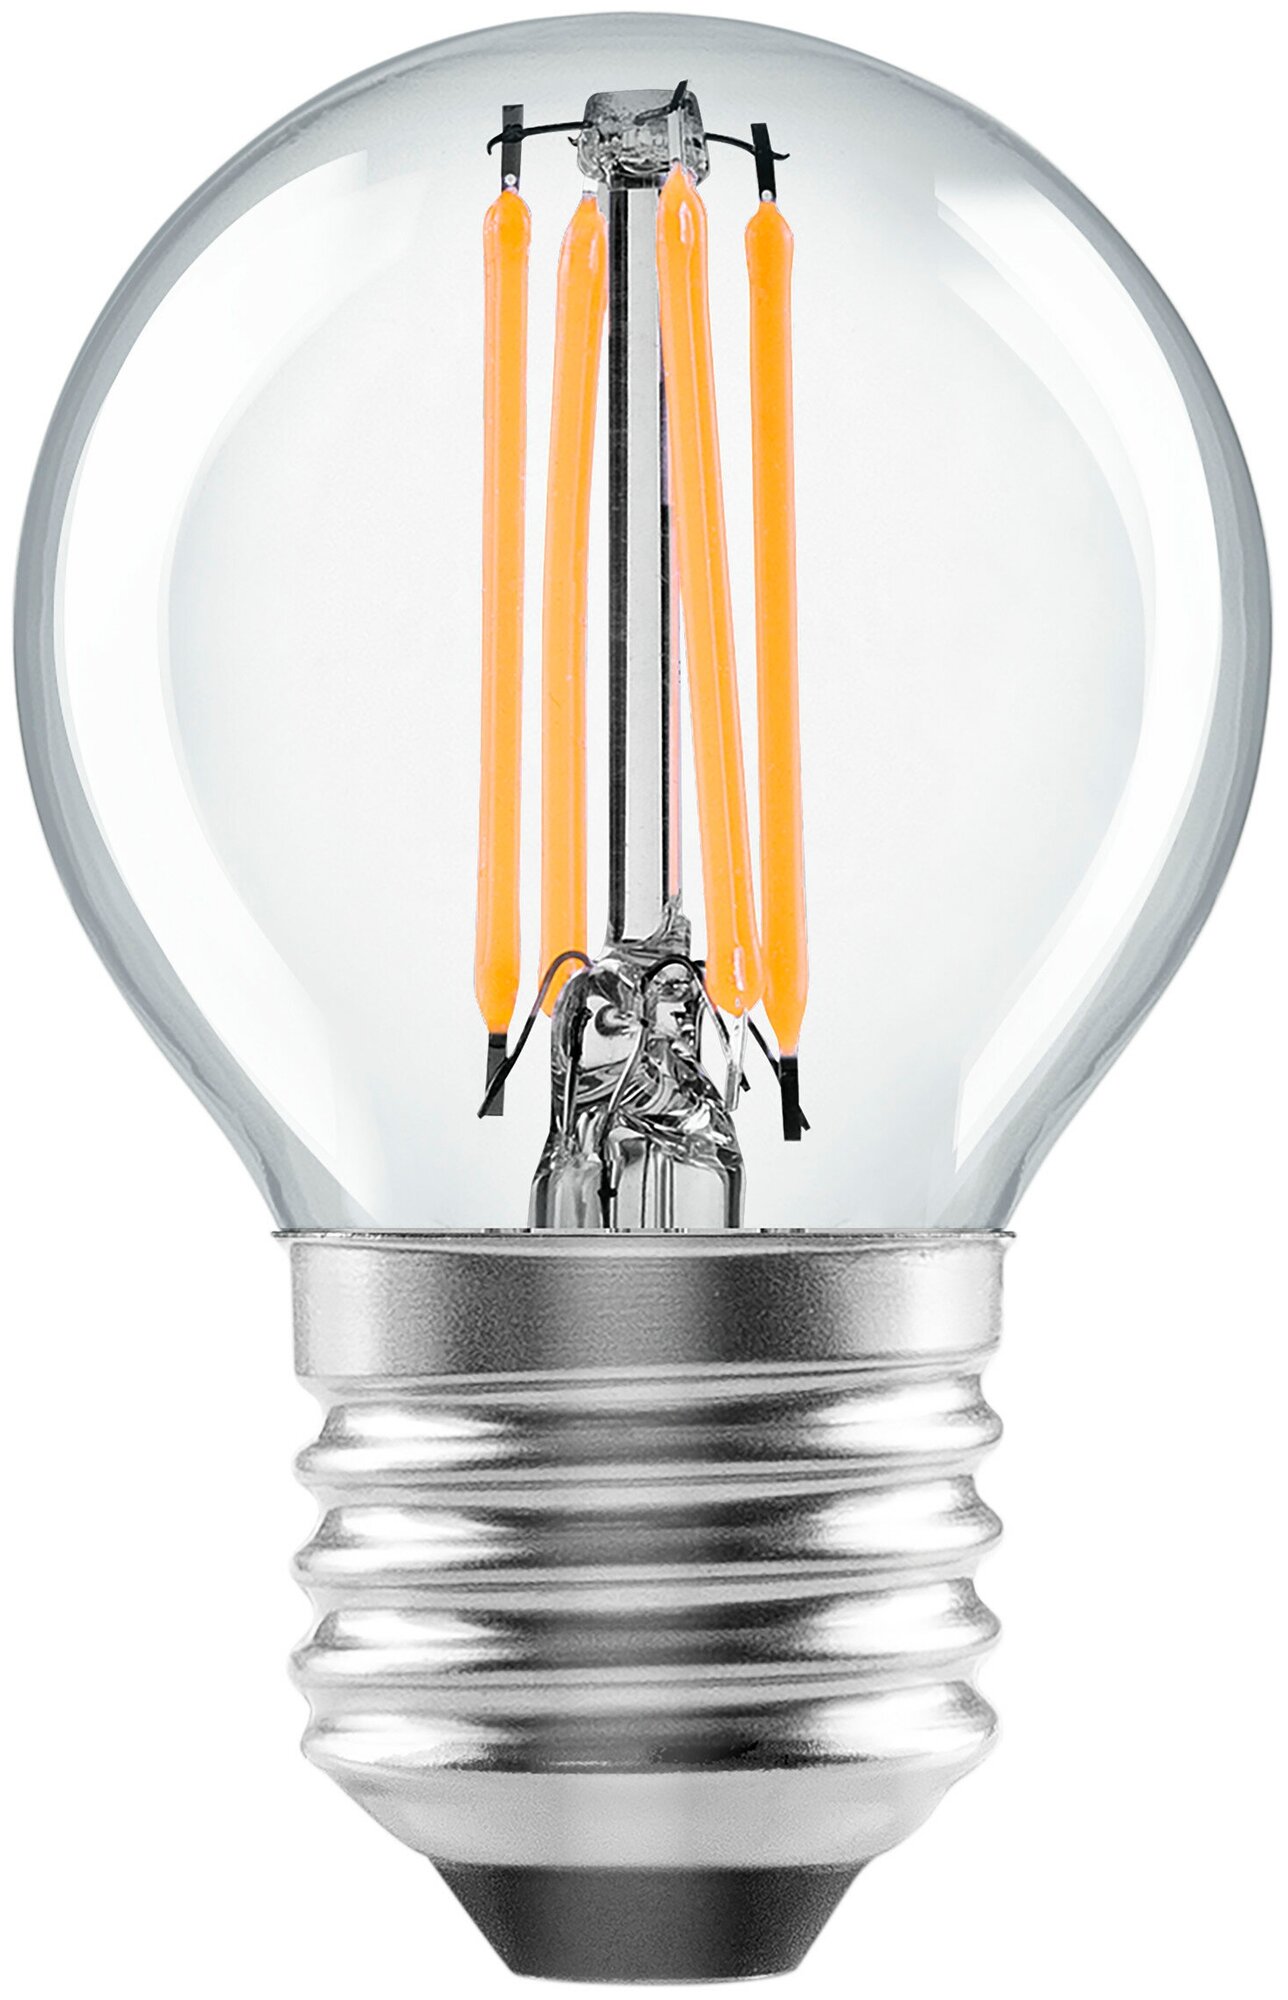 Лампа светодиодная Lexman E27 220-240 В 5 Вт шар прозрачная 600 лм нейтральный белый свет